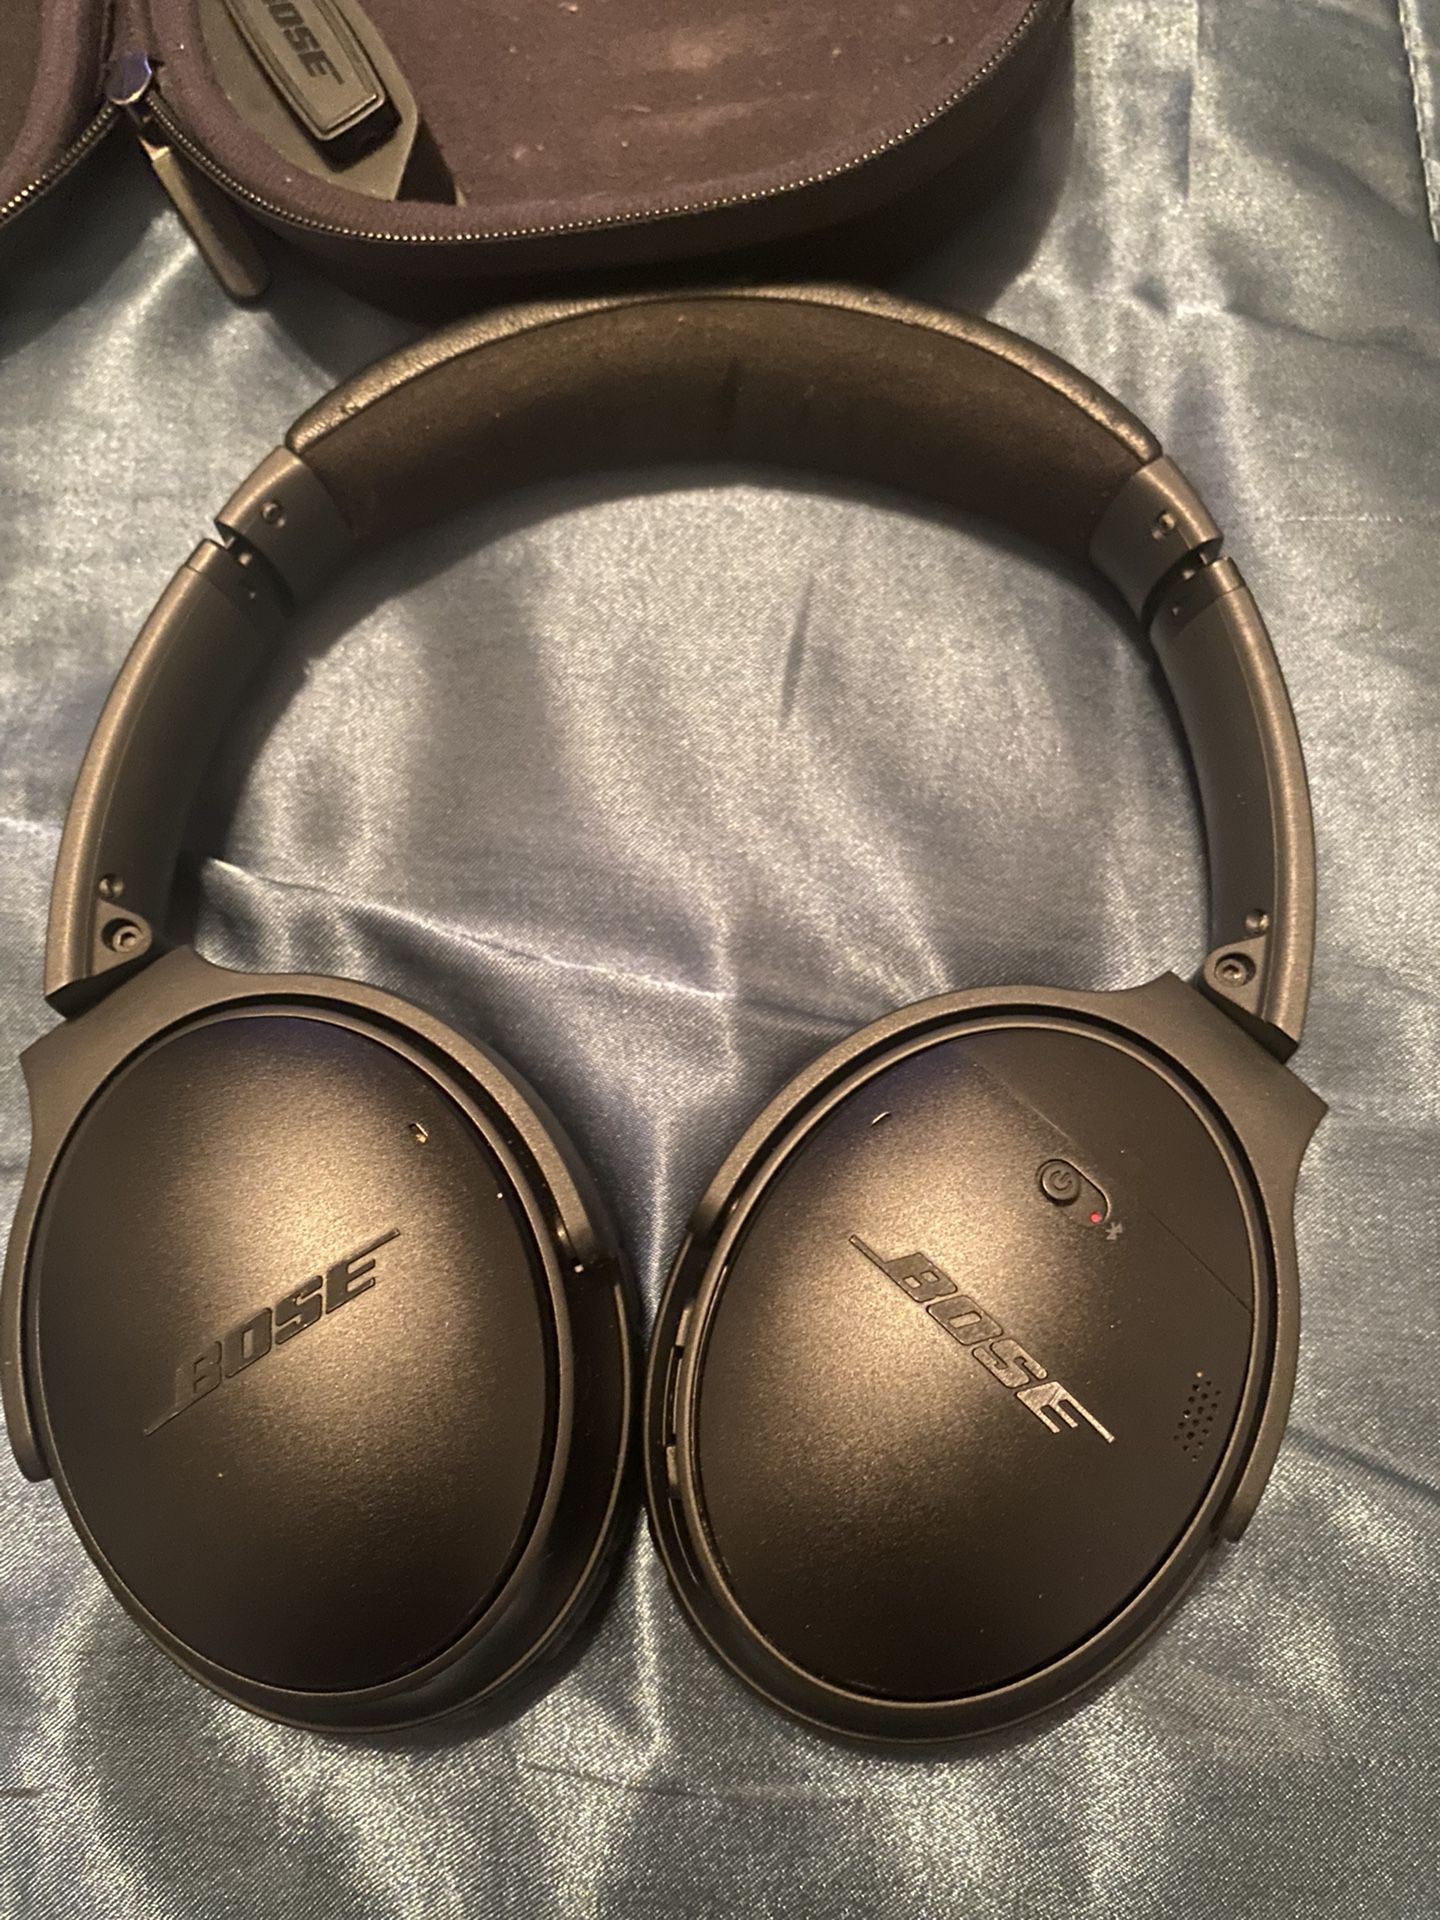 Bose quietcomfort ii headphones